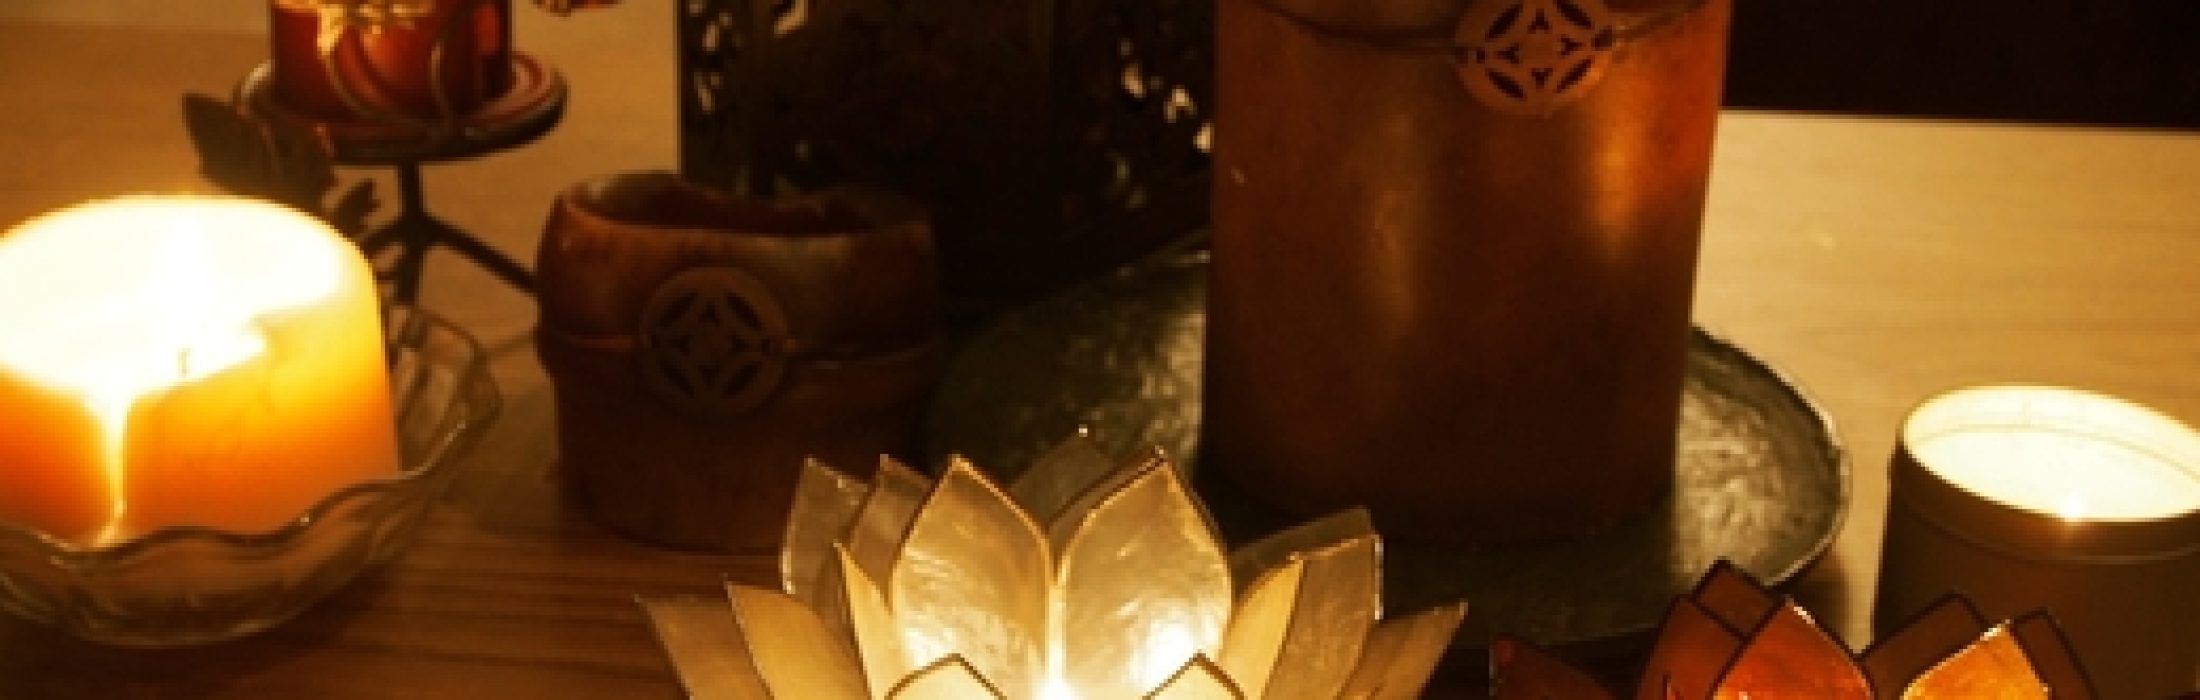 Bhakti-Yoga-Candles